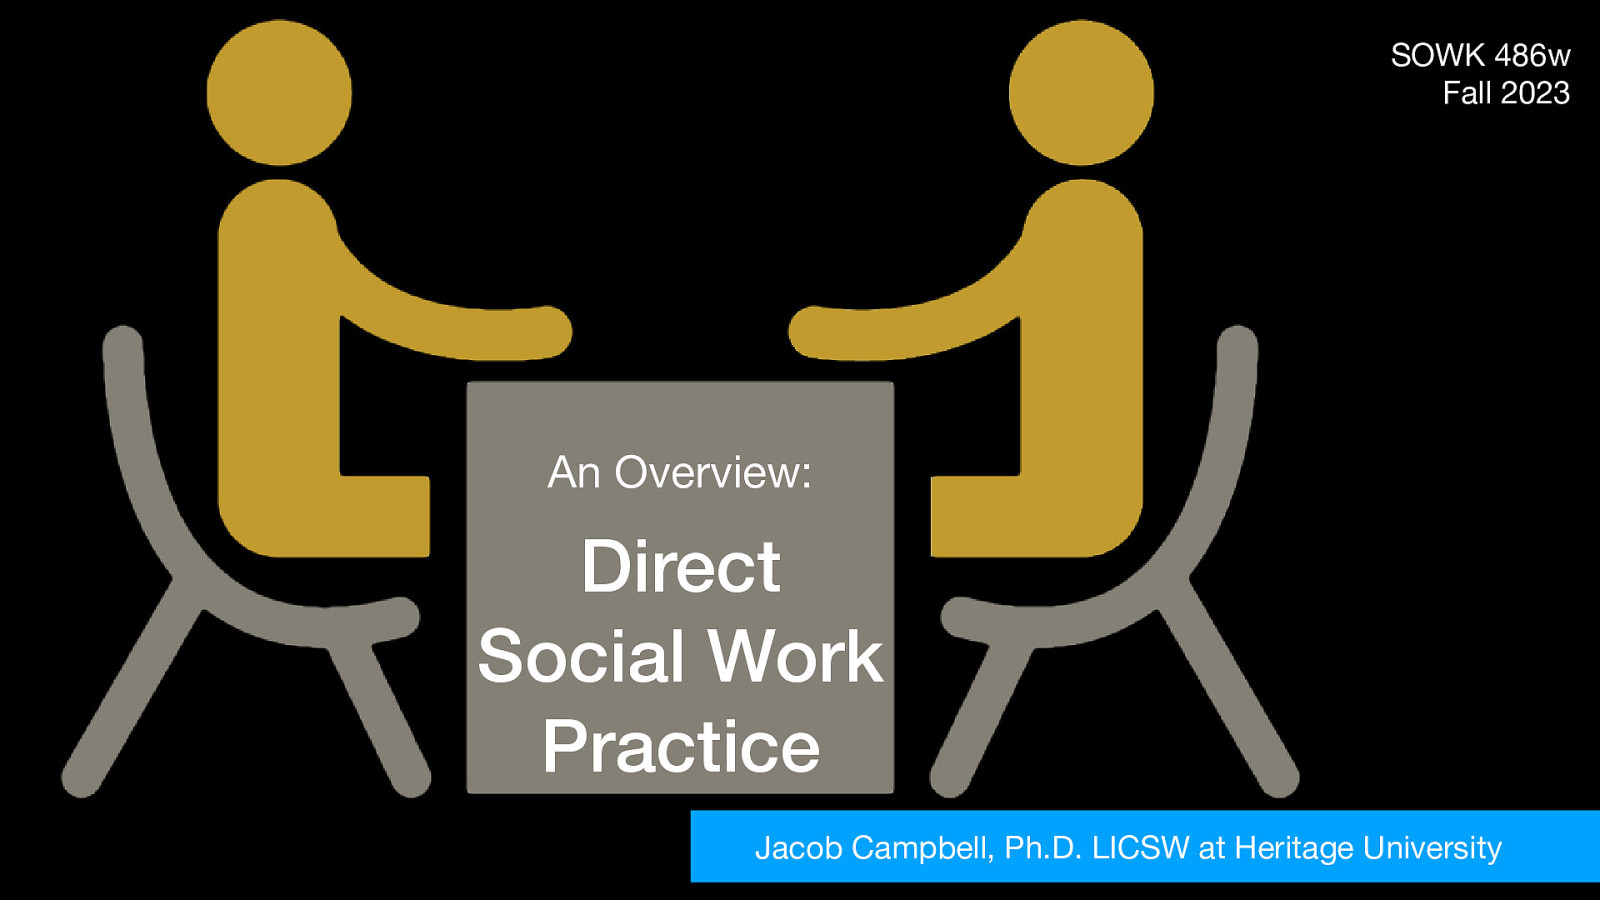 Fall 2023 SOWK 486w Week 03 - Direct Social Work Practice